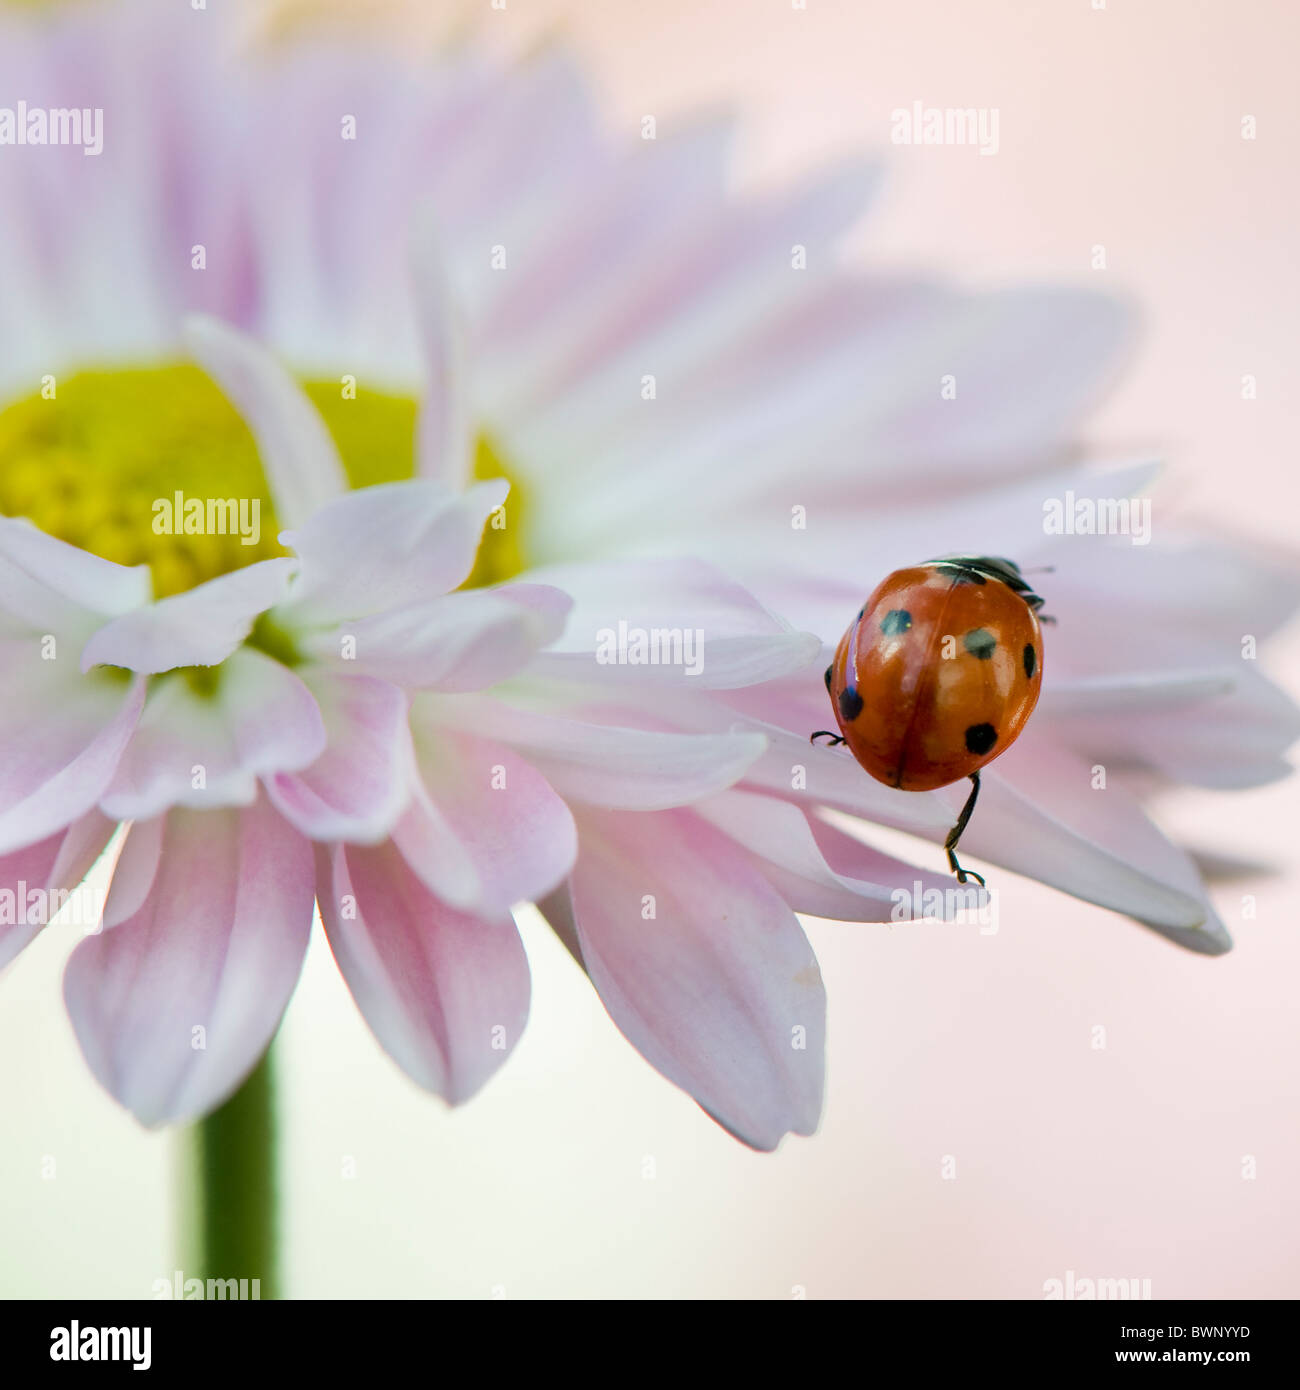 A seven spot Ladybird on a daisy flower Stock Photo